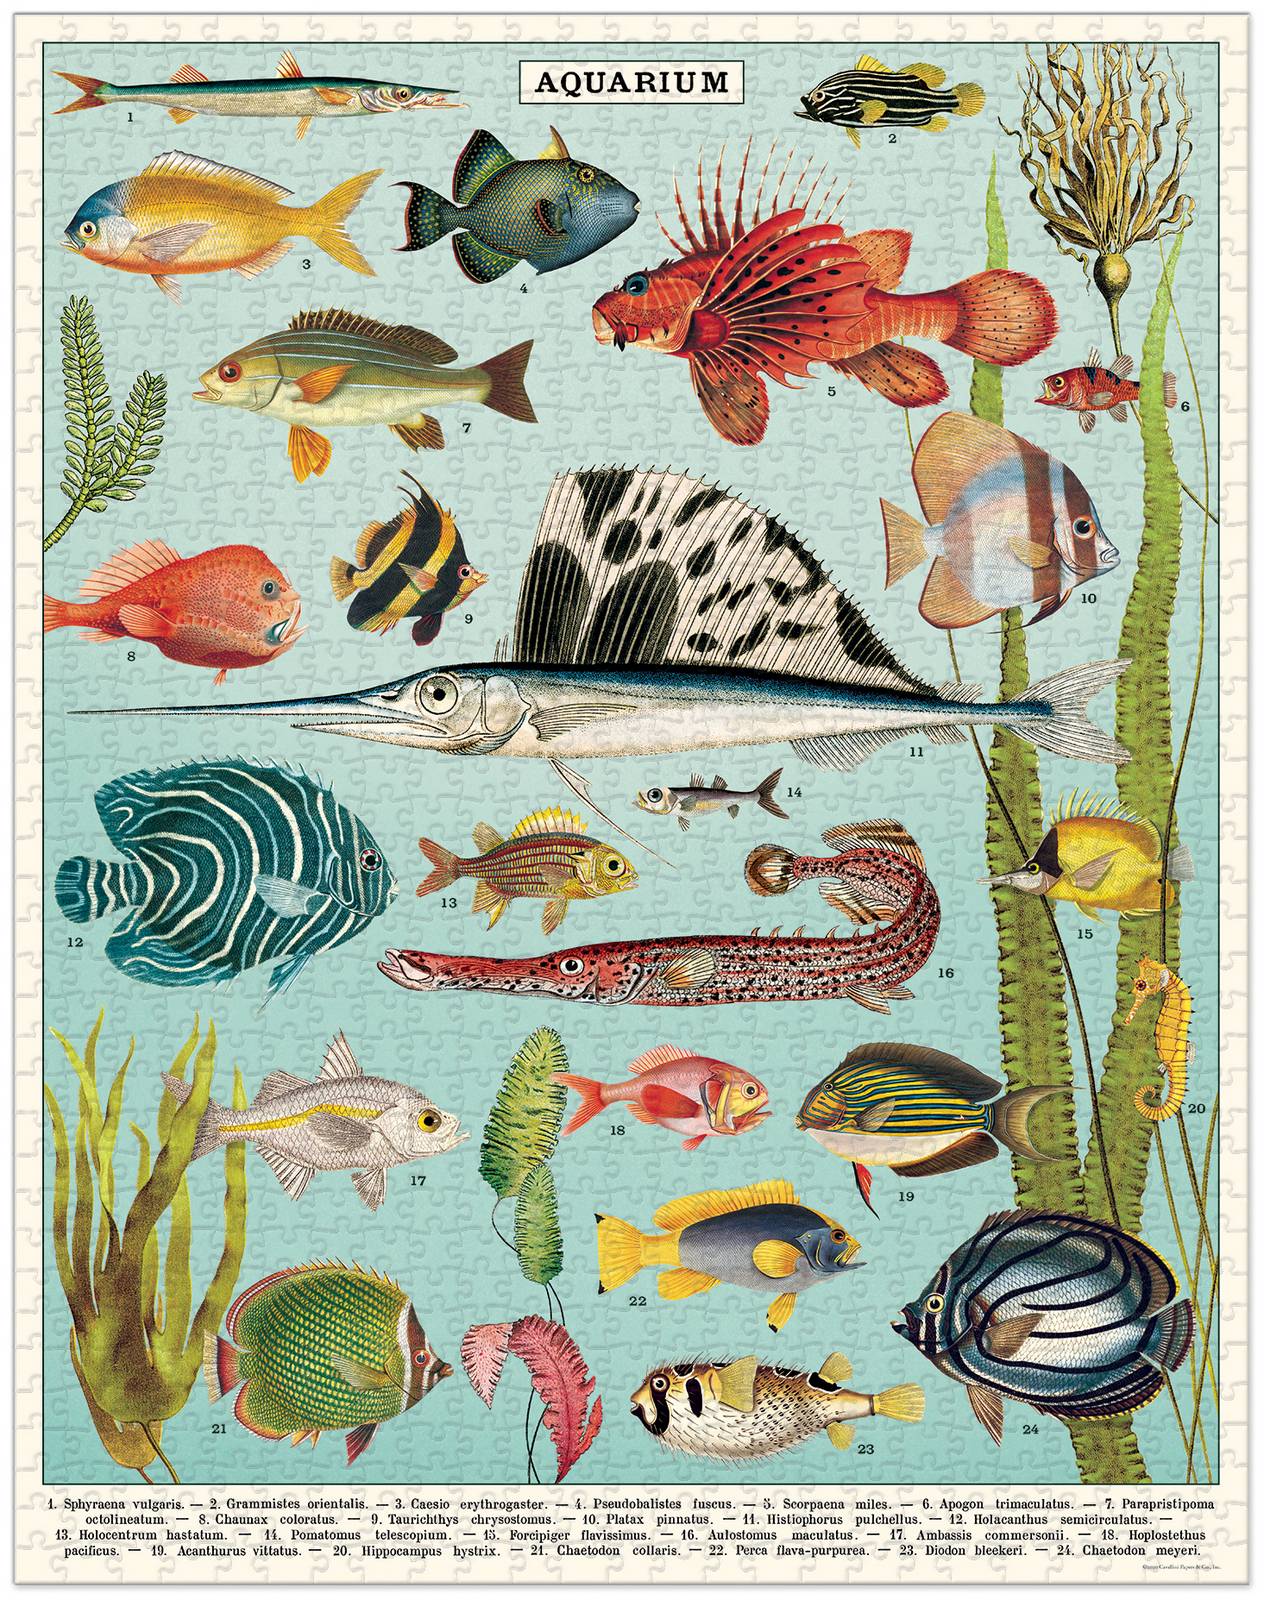 Aquarium Vintage Puzzle - 1000 pieces